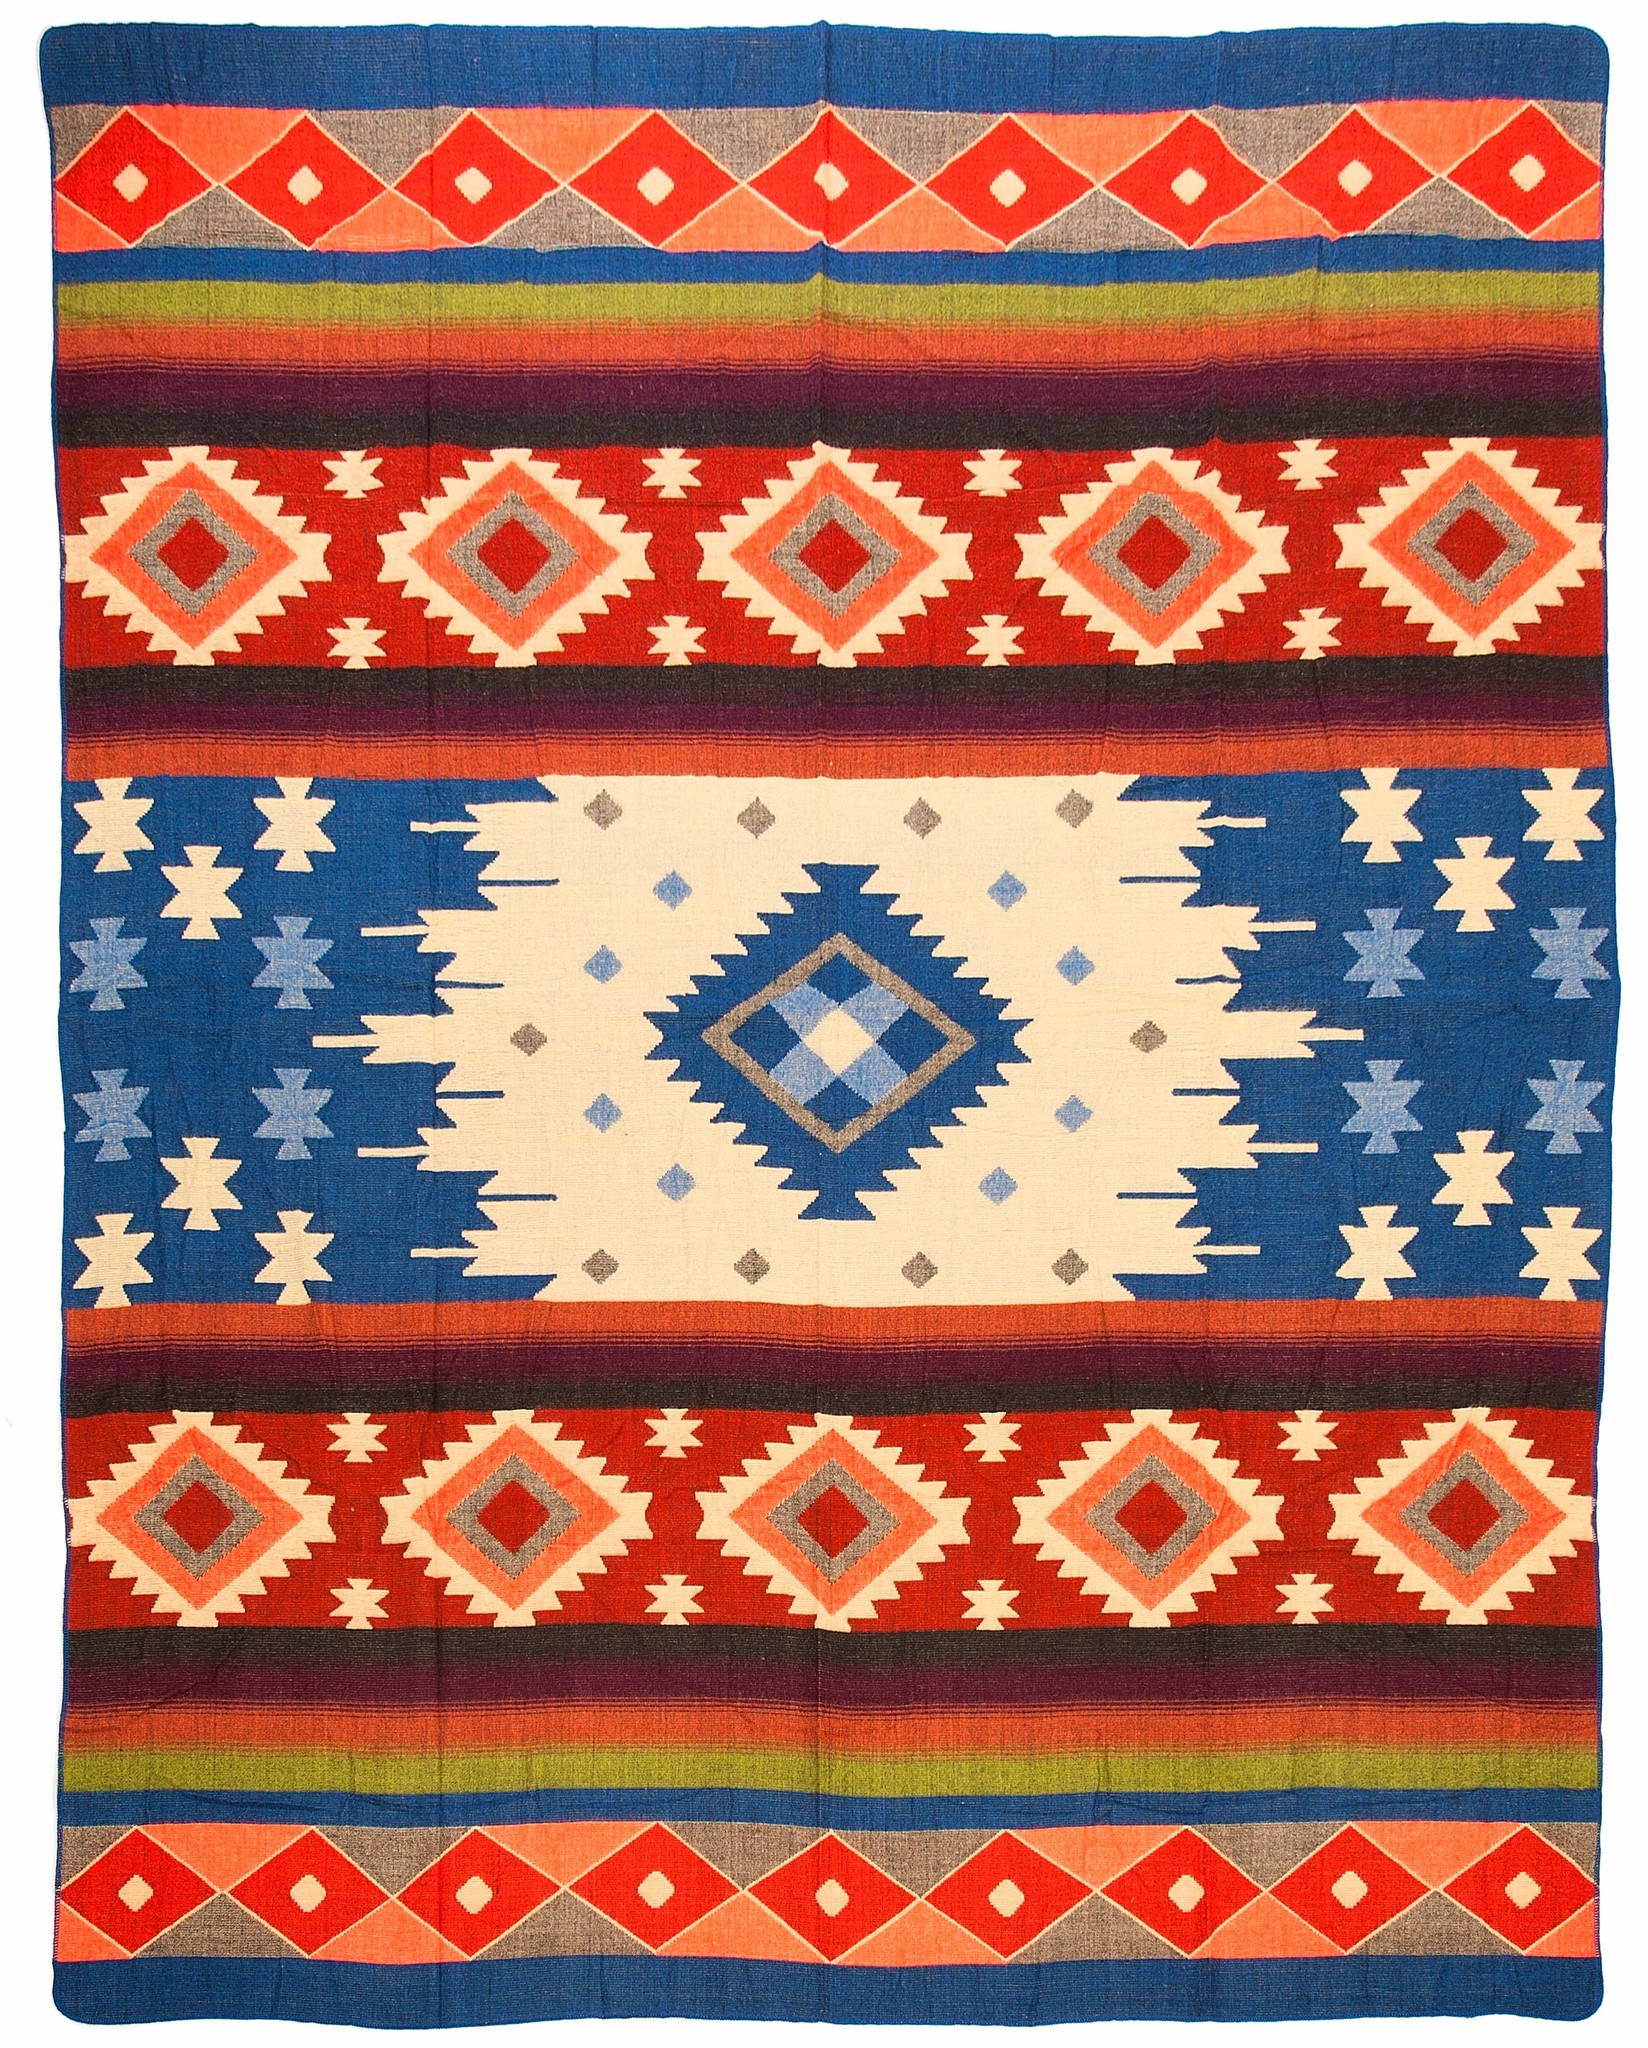 Alpaca Native Deken - Dubbelzijdige prints - Dutch/Native Design - FairTrade & Authentiek - Quilotoa - Blauw